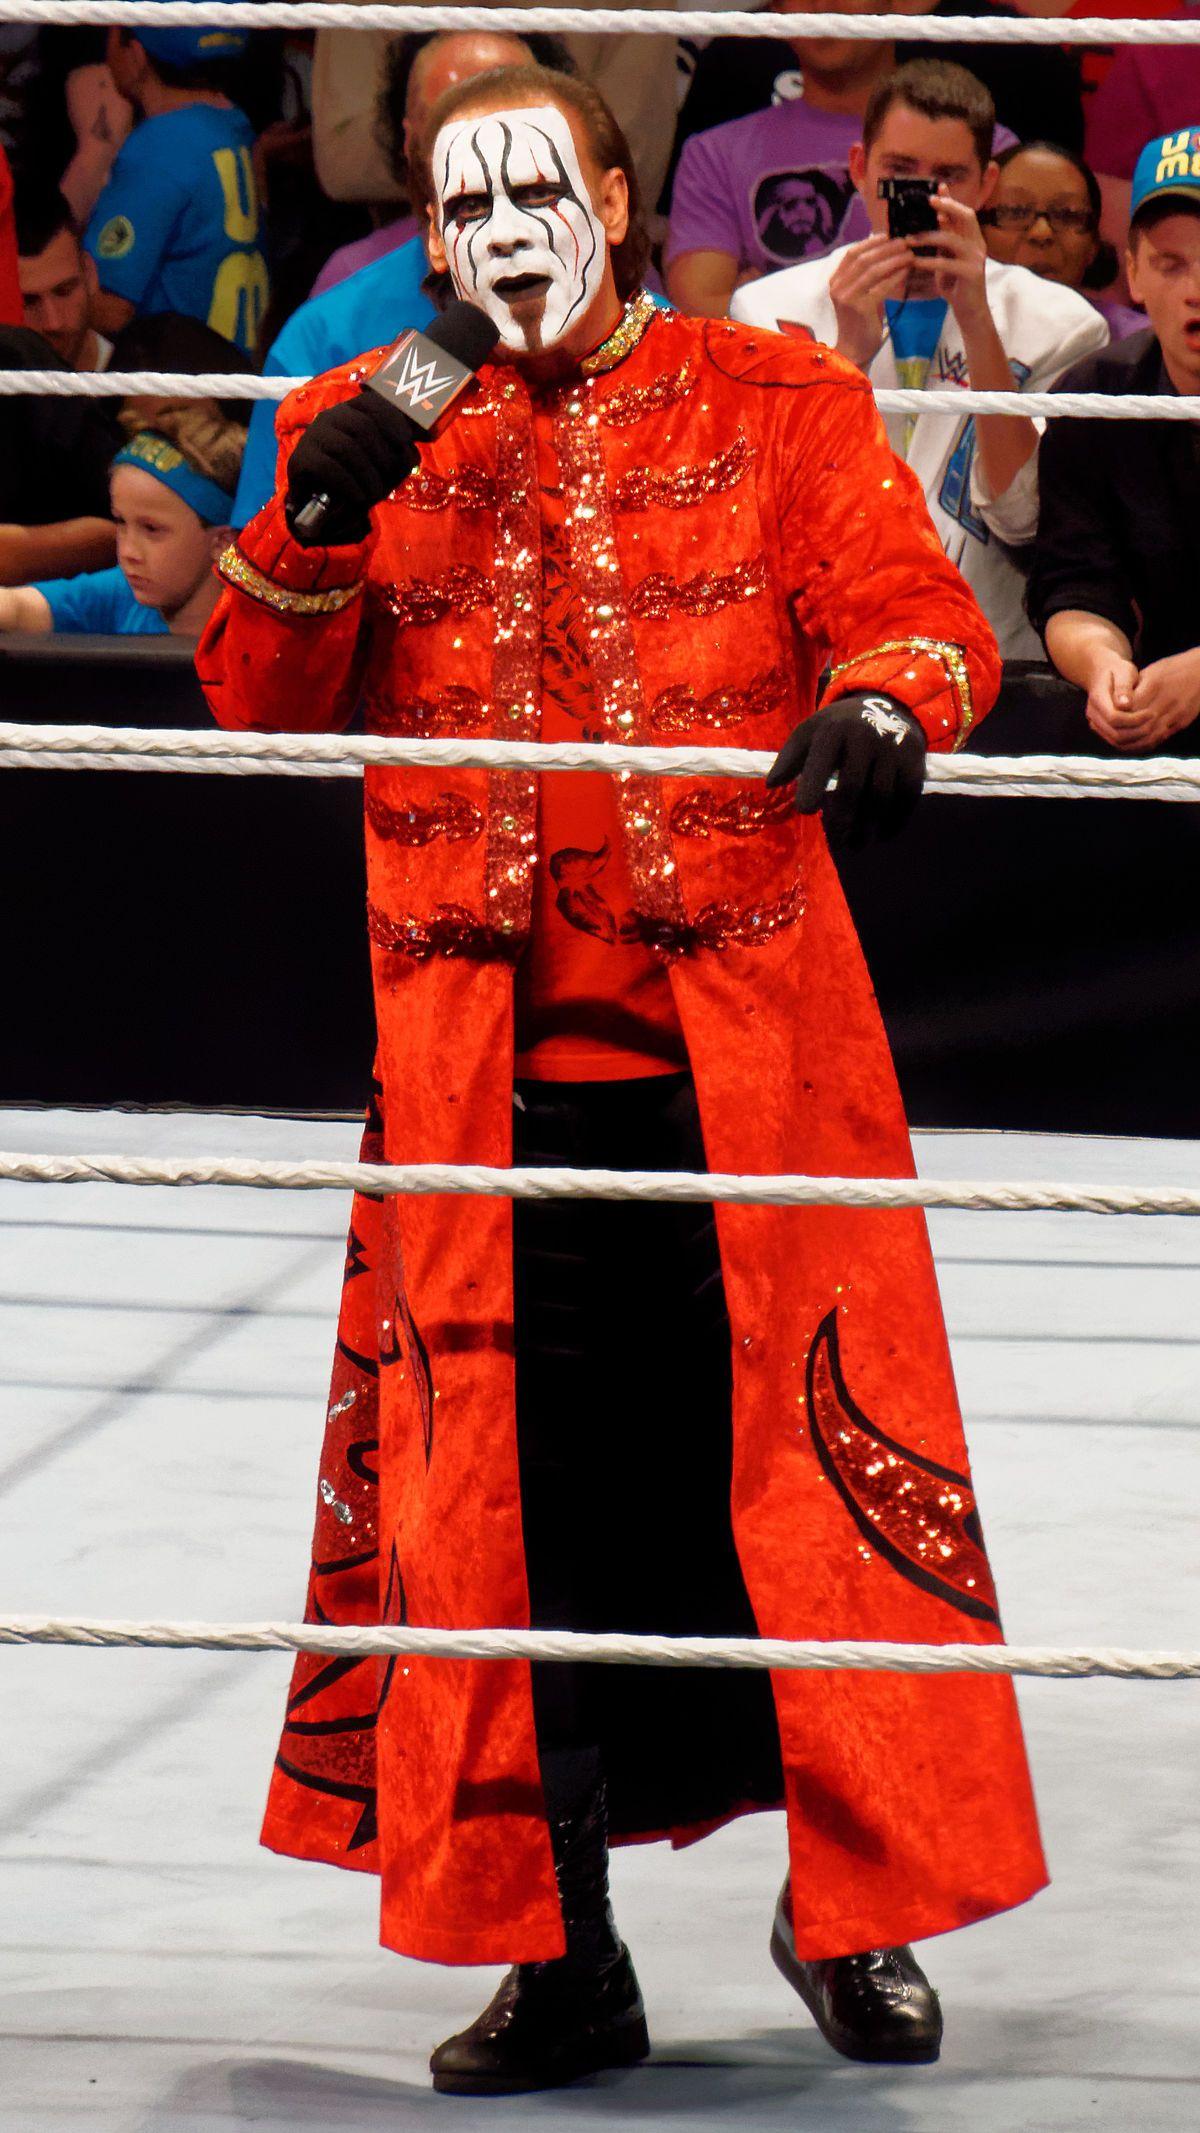 Sting (wrestler)